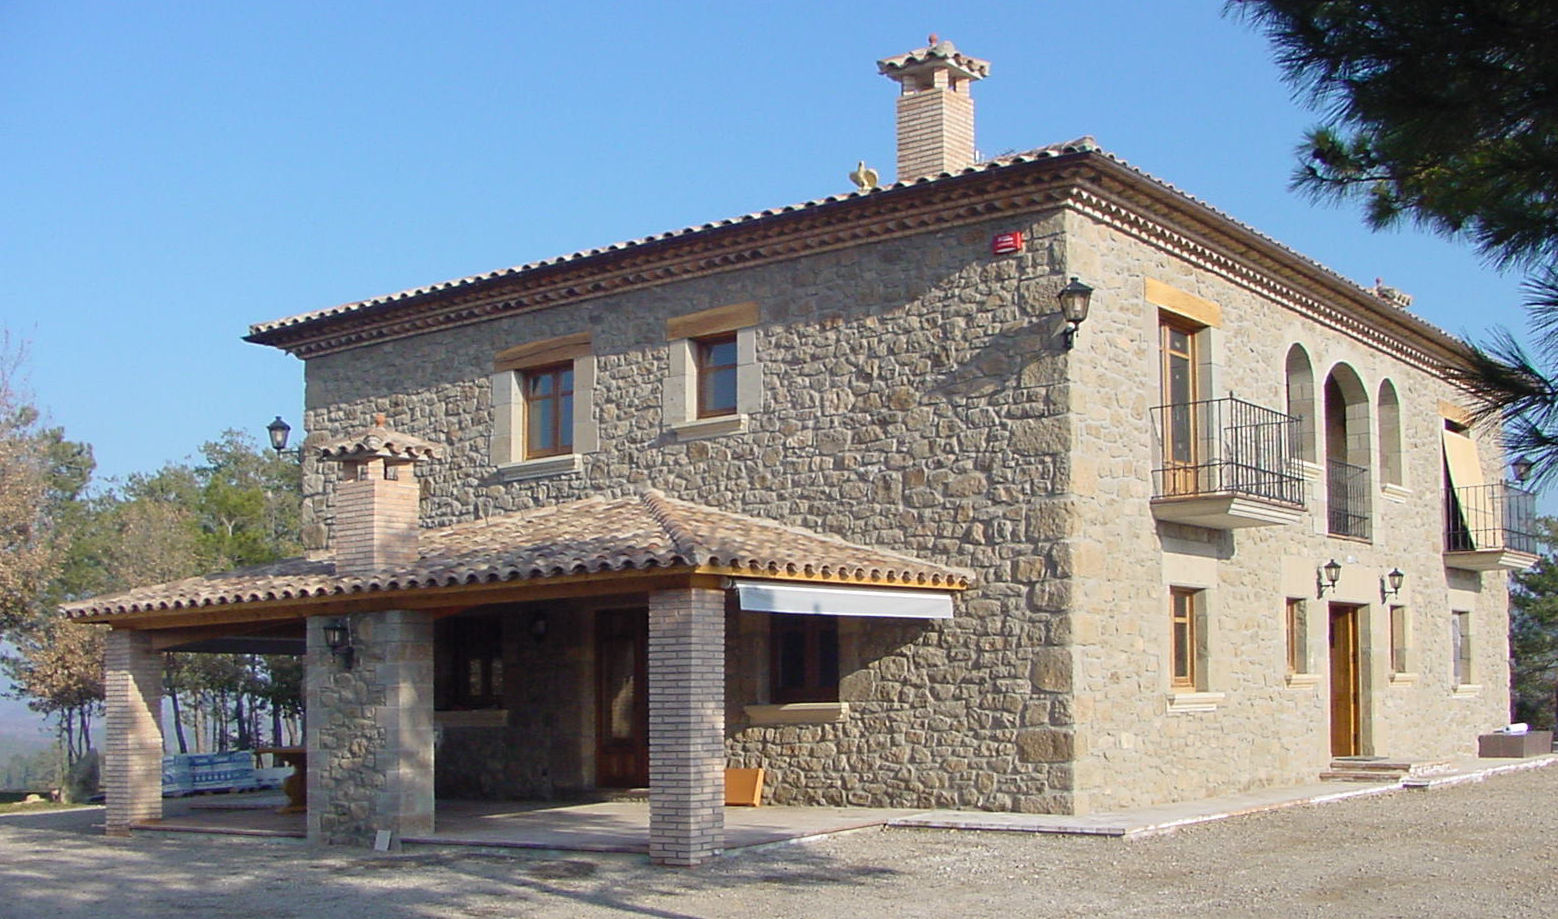 Casa de turismo rural en la Torre d'Oristà (Barcelona), ALENTORN i ALENTORN ARQUITECTES, SLP ALENTORN i ALENTORN ARQUITECTES, SLP Rustic style house Stone